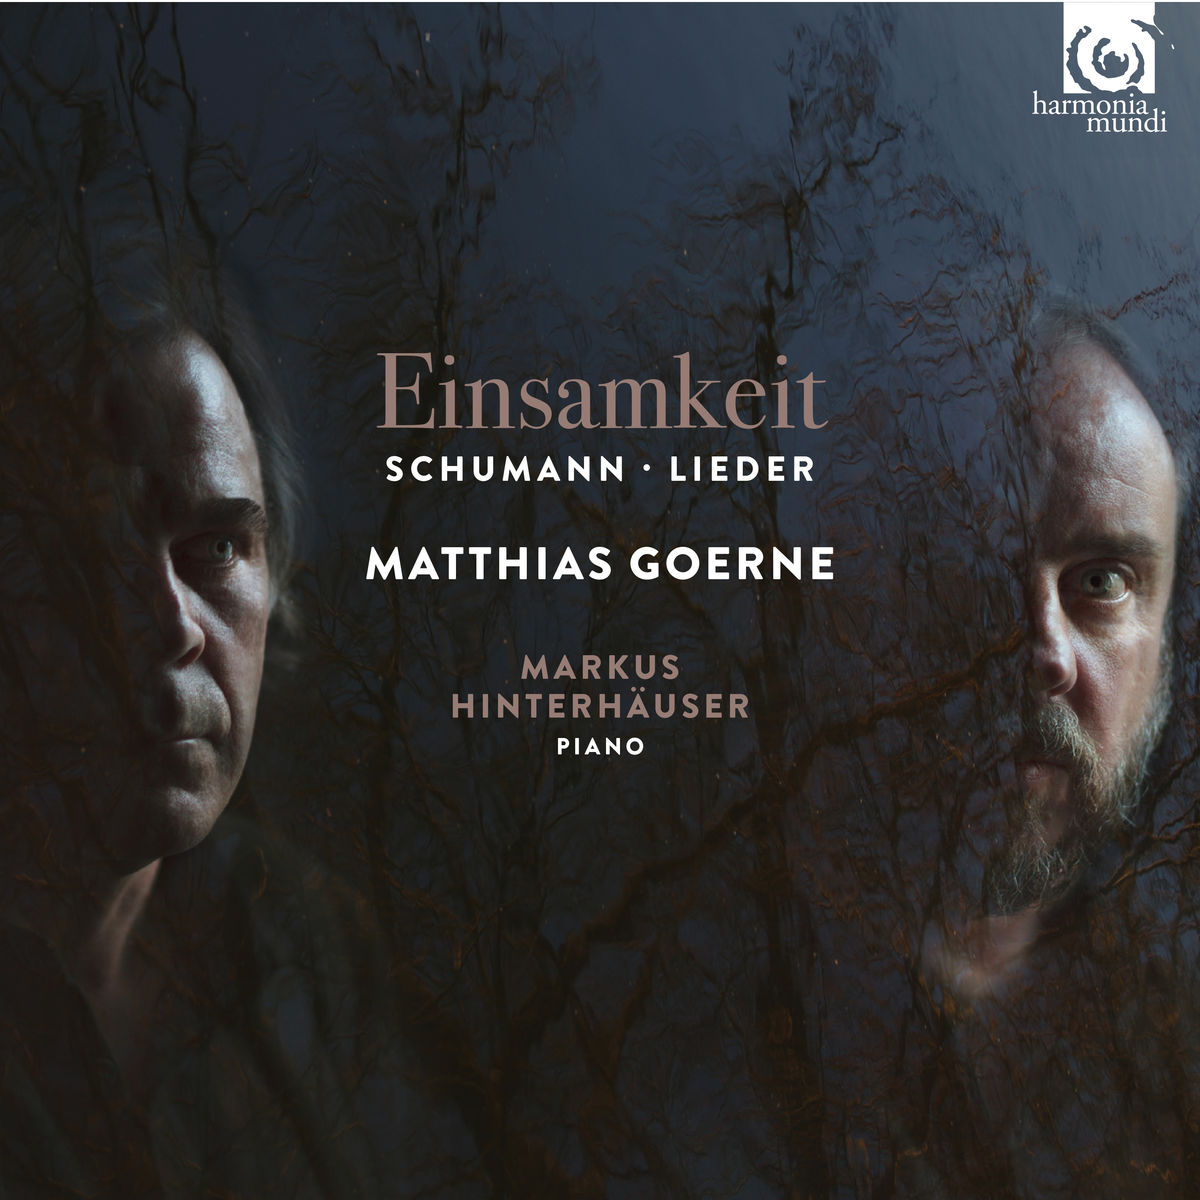 Matthias Goerne & Markus Hinterhauser – Schumann: Einsamkeit – Lieder (2017) [Qobuz FLAC 24bit/96kHz]